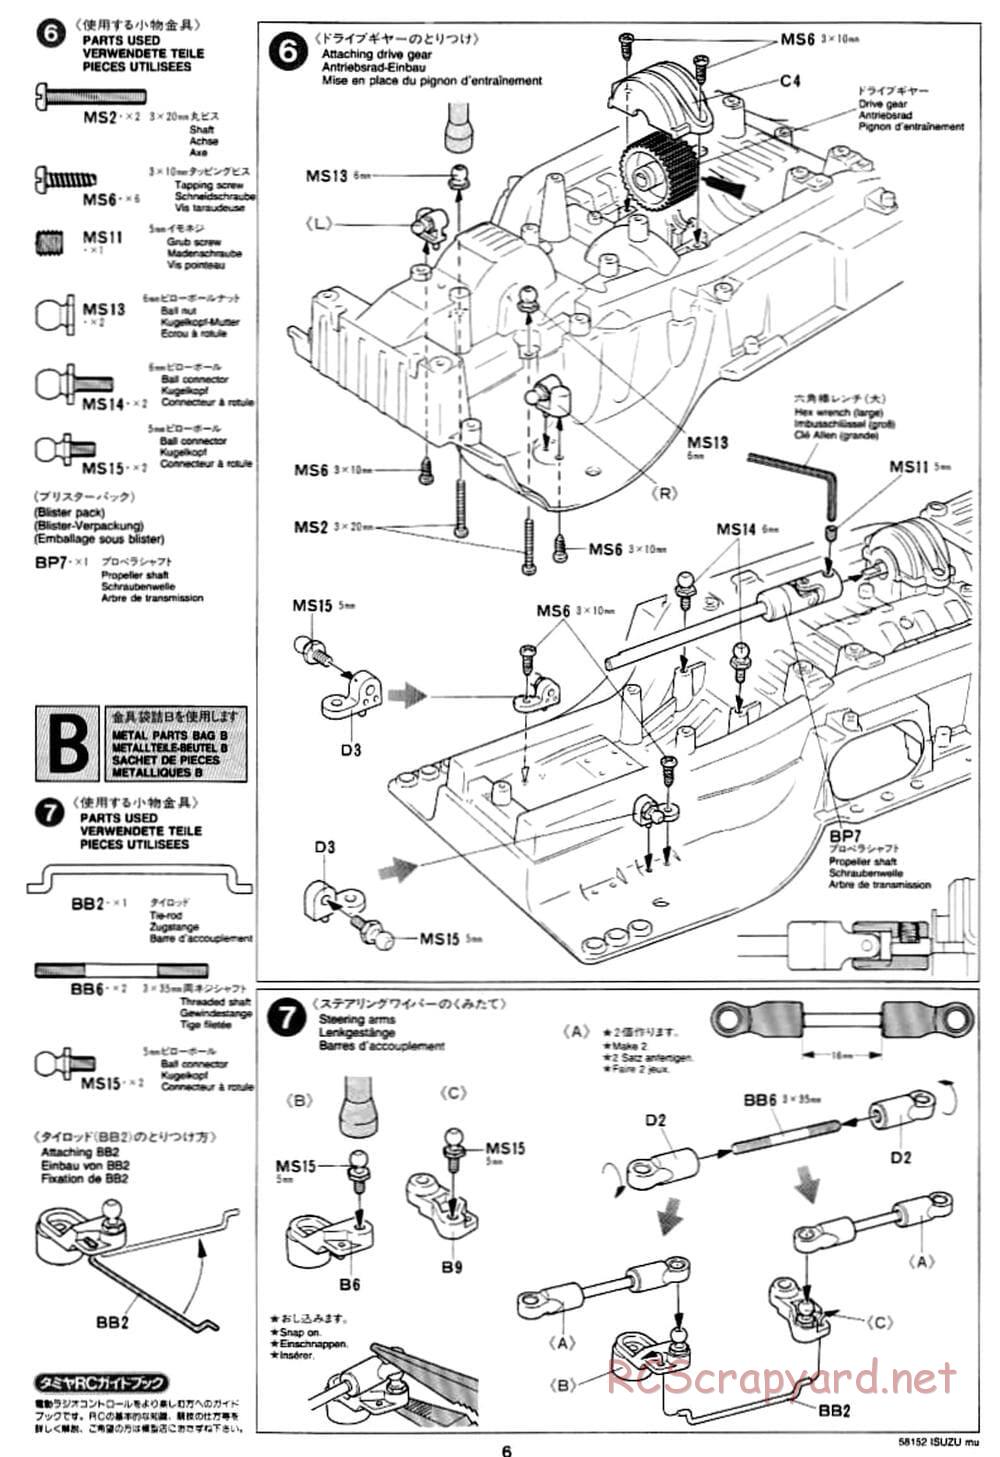 Tamiya - Isuzu Mu - CC-01 Chassis - Manual - Page 6